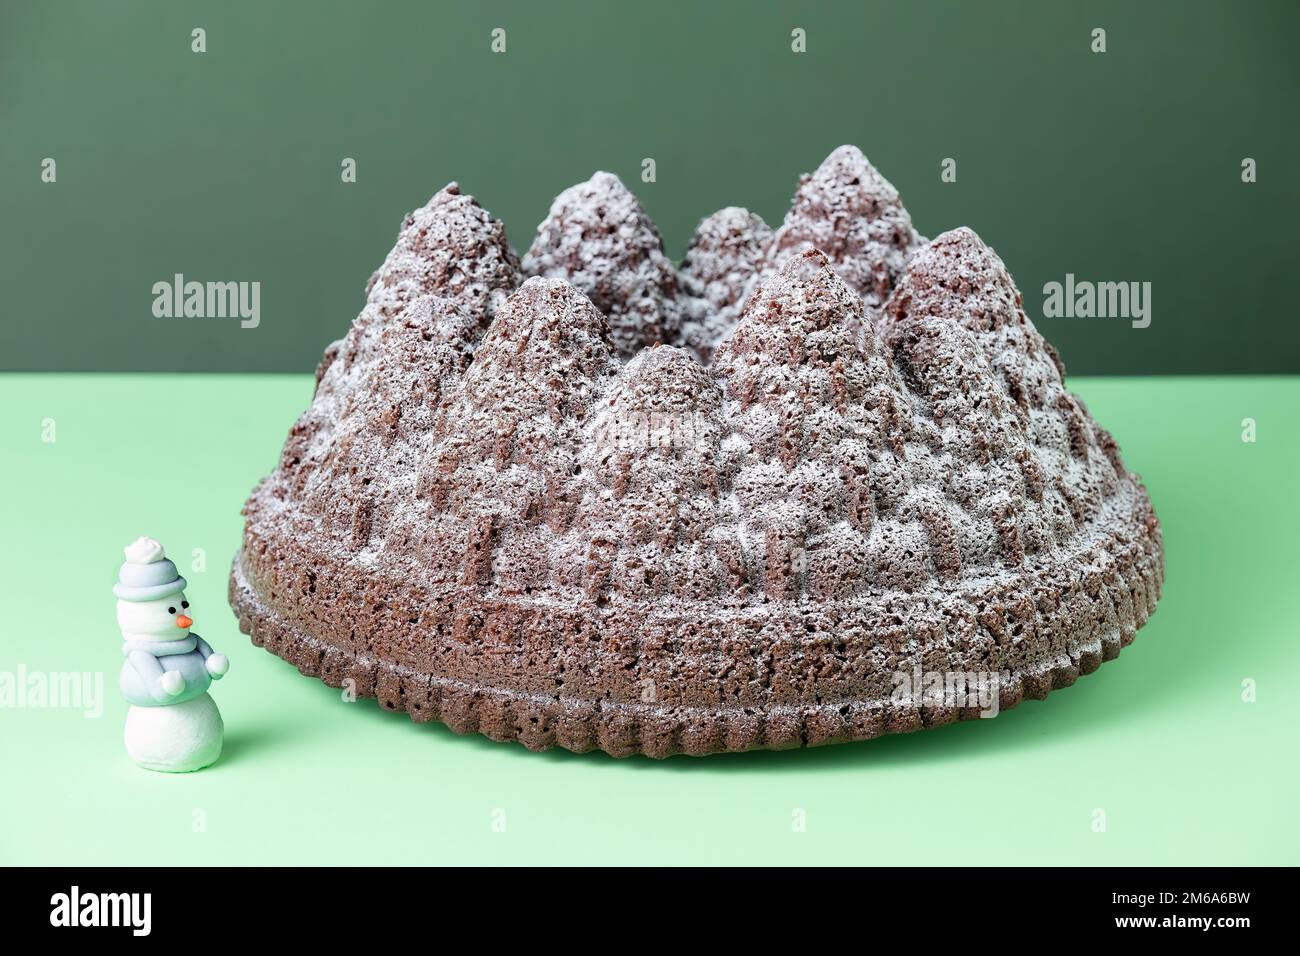 Un gâteau au chocolat de Noël festif. Le gâteau est fait à l'aide d'un moule Bundt pour former la pâte à gâteau dans les formes d'arbre. Une saupoudrez de sucre glace Banque D'Images